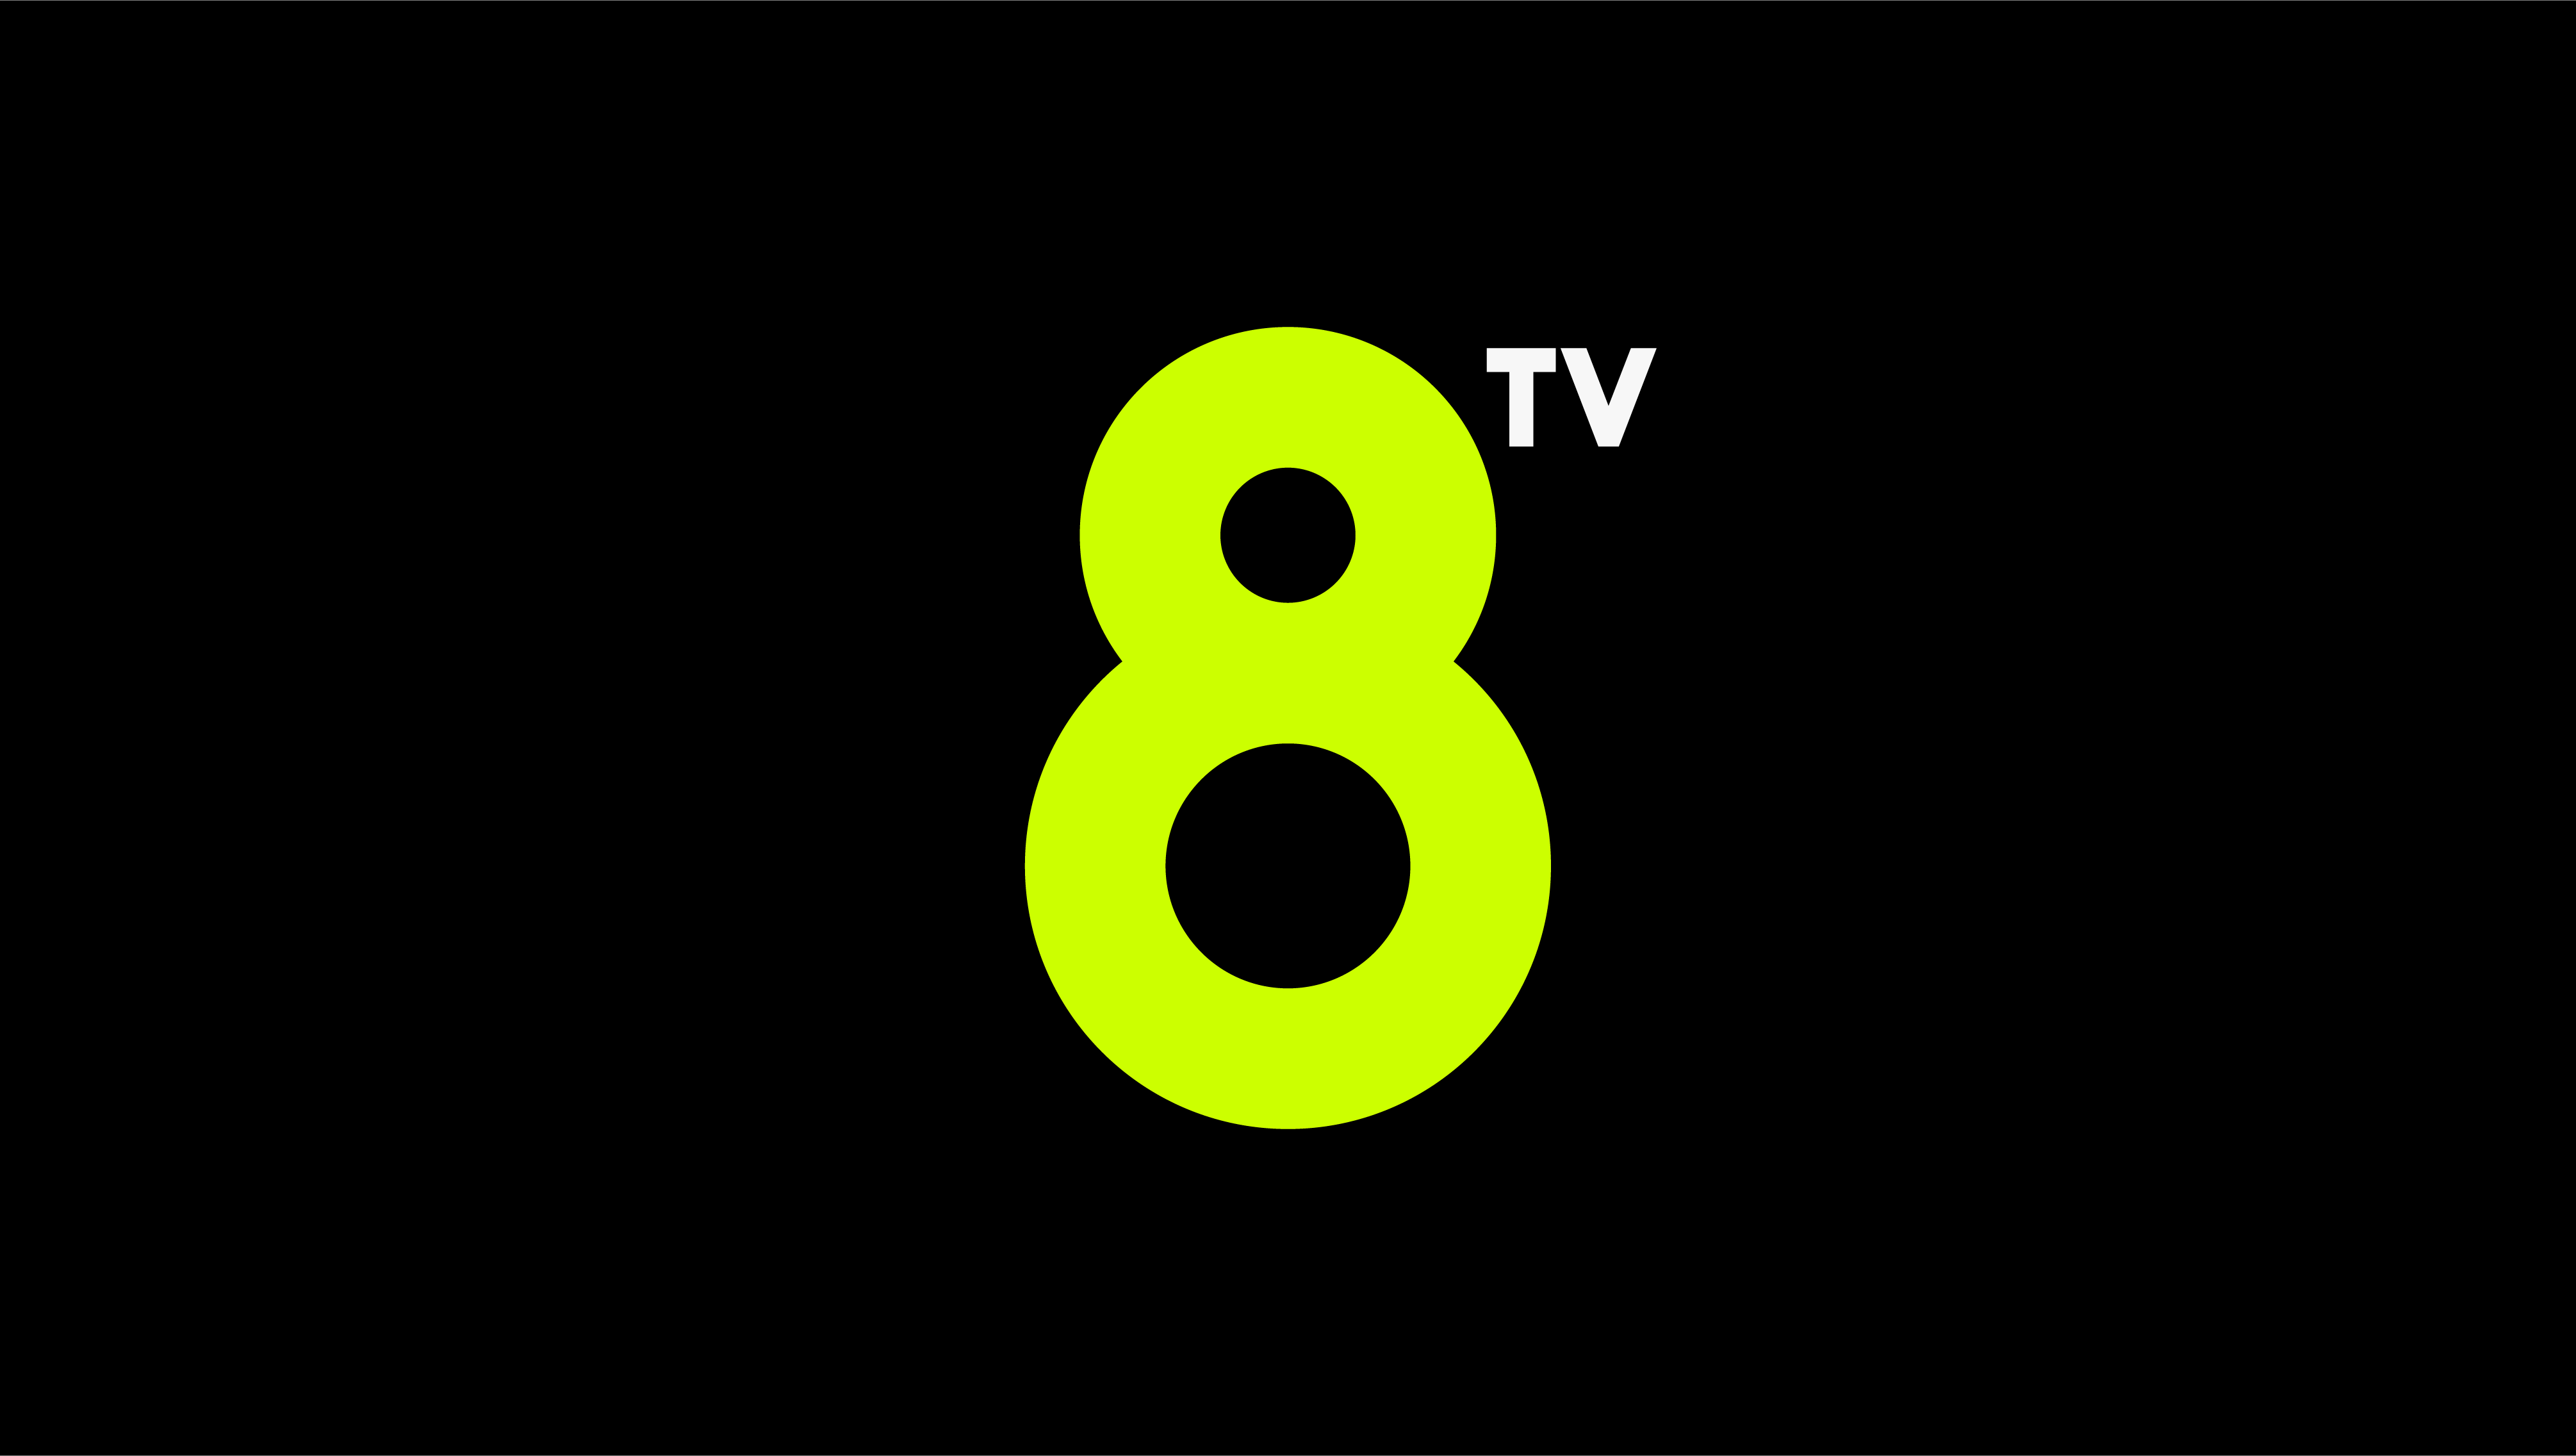 Bomba a 8tv: supera per primer cop TV3 amb un programa rècord d'audiència